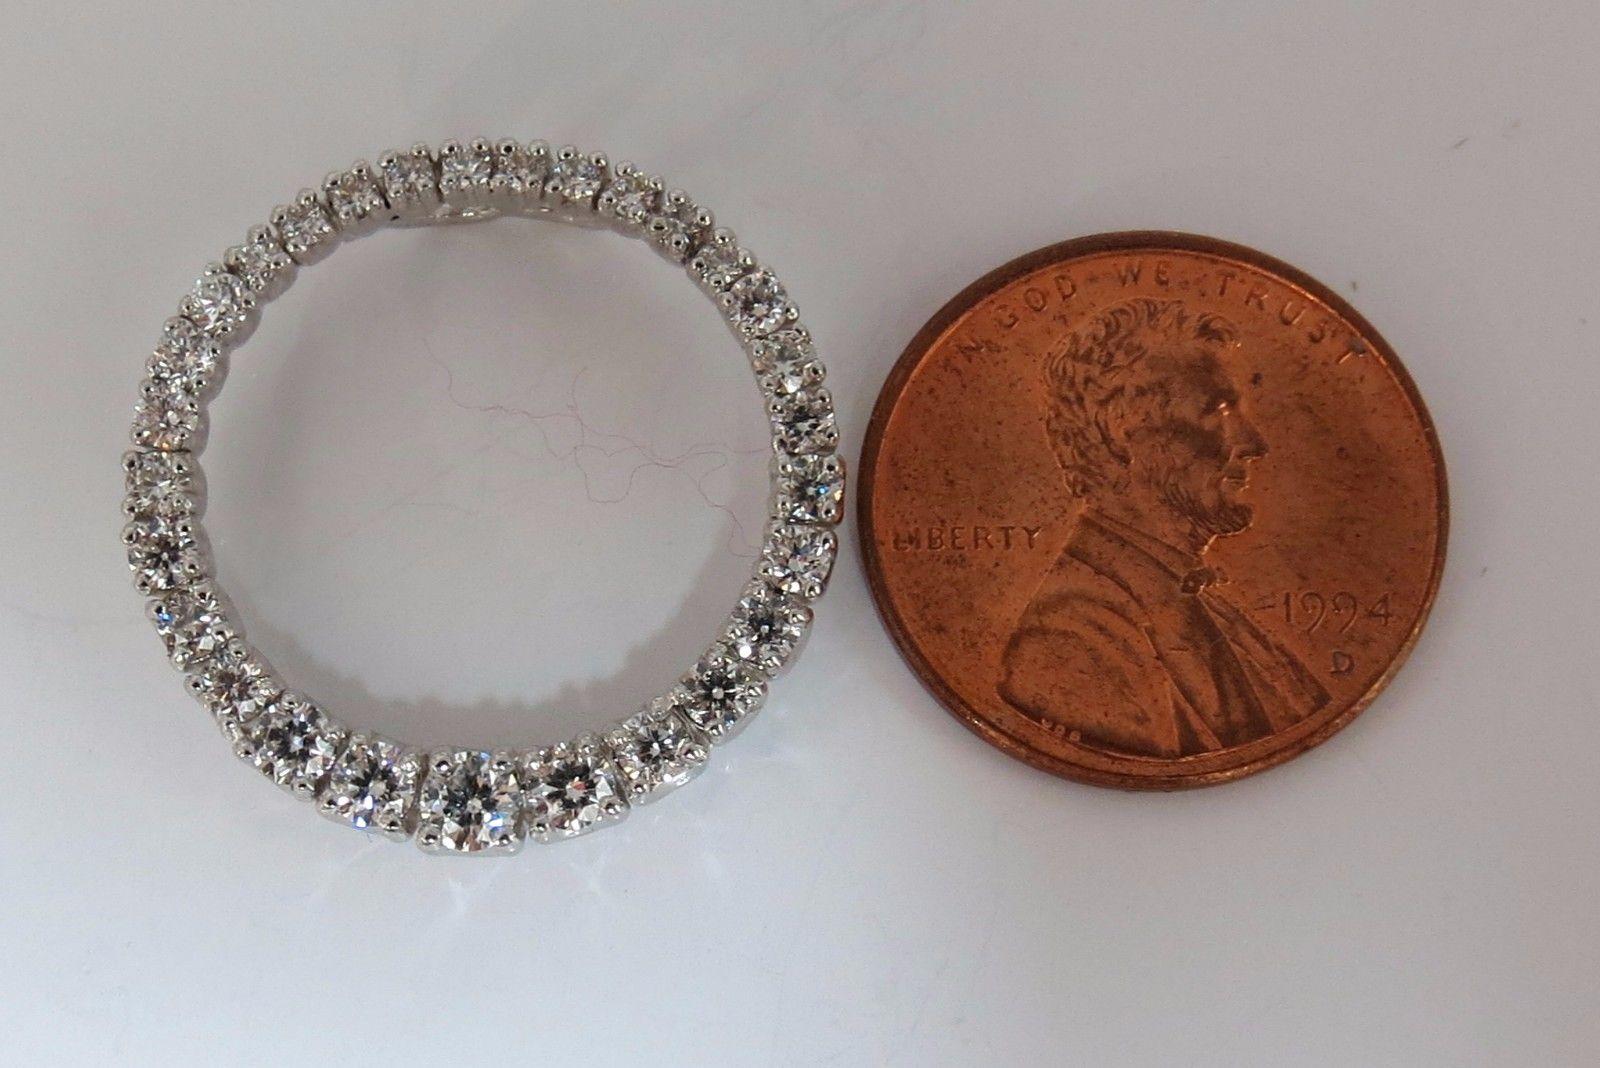 Cercle gradué, plus grand du côté sud.

1.07ct. de diamants ronds Pendentif.

 Diamants ronds brillants pleine taille.

 Vs-2  La clarté. 

G- couleur.

or blanc 14kt 

Diamètre : 0,91 pouce.

2.7 grammes.

Accepte une chaîne de 2,5 mm (non